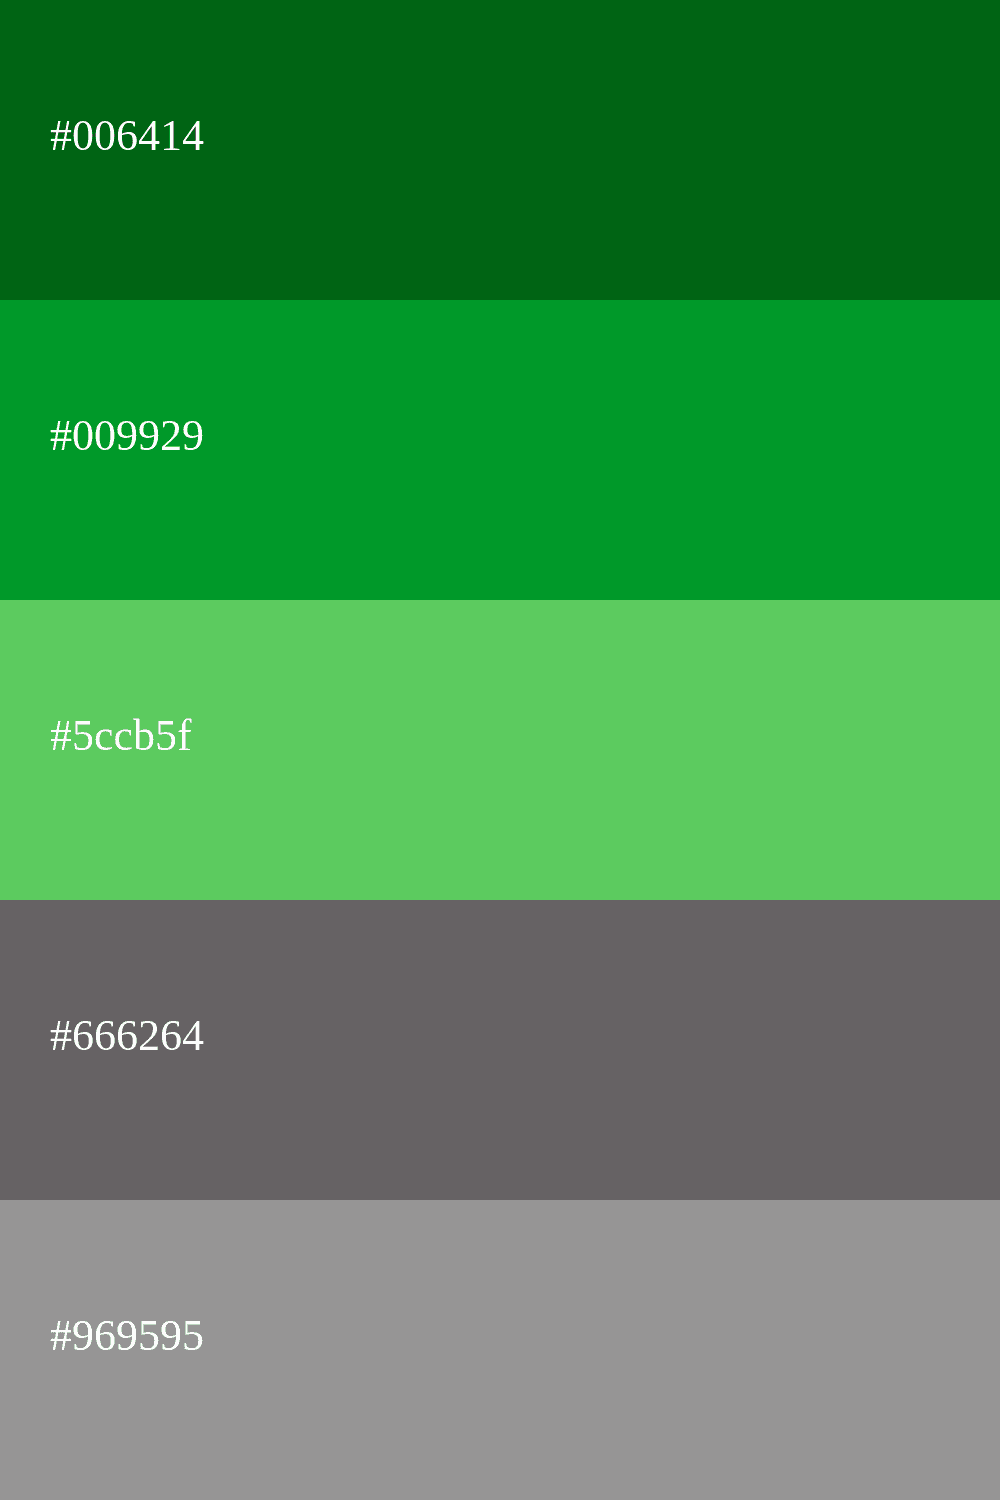 couleur verte et grise